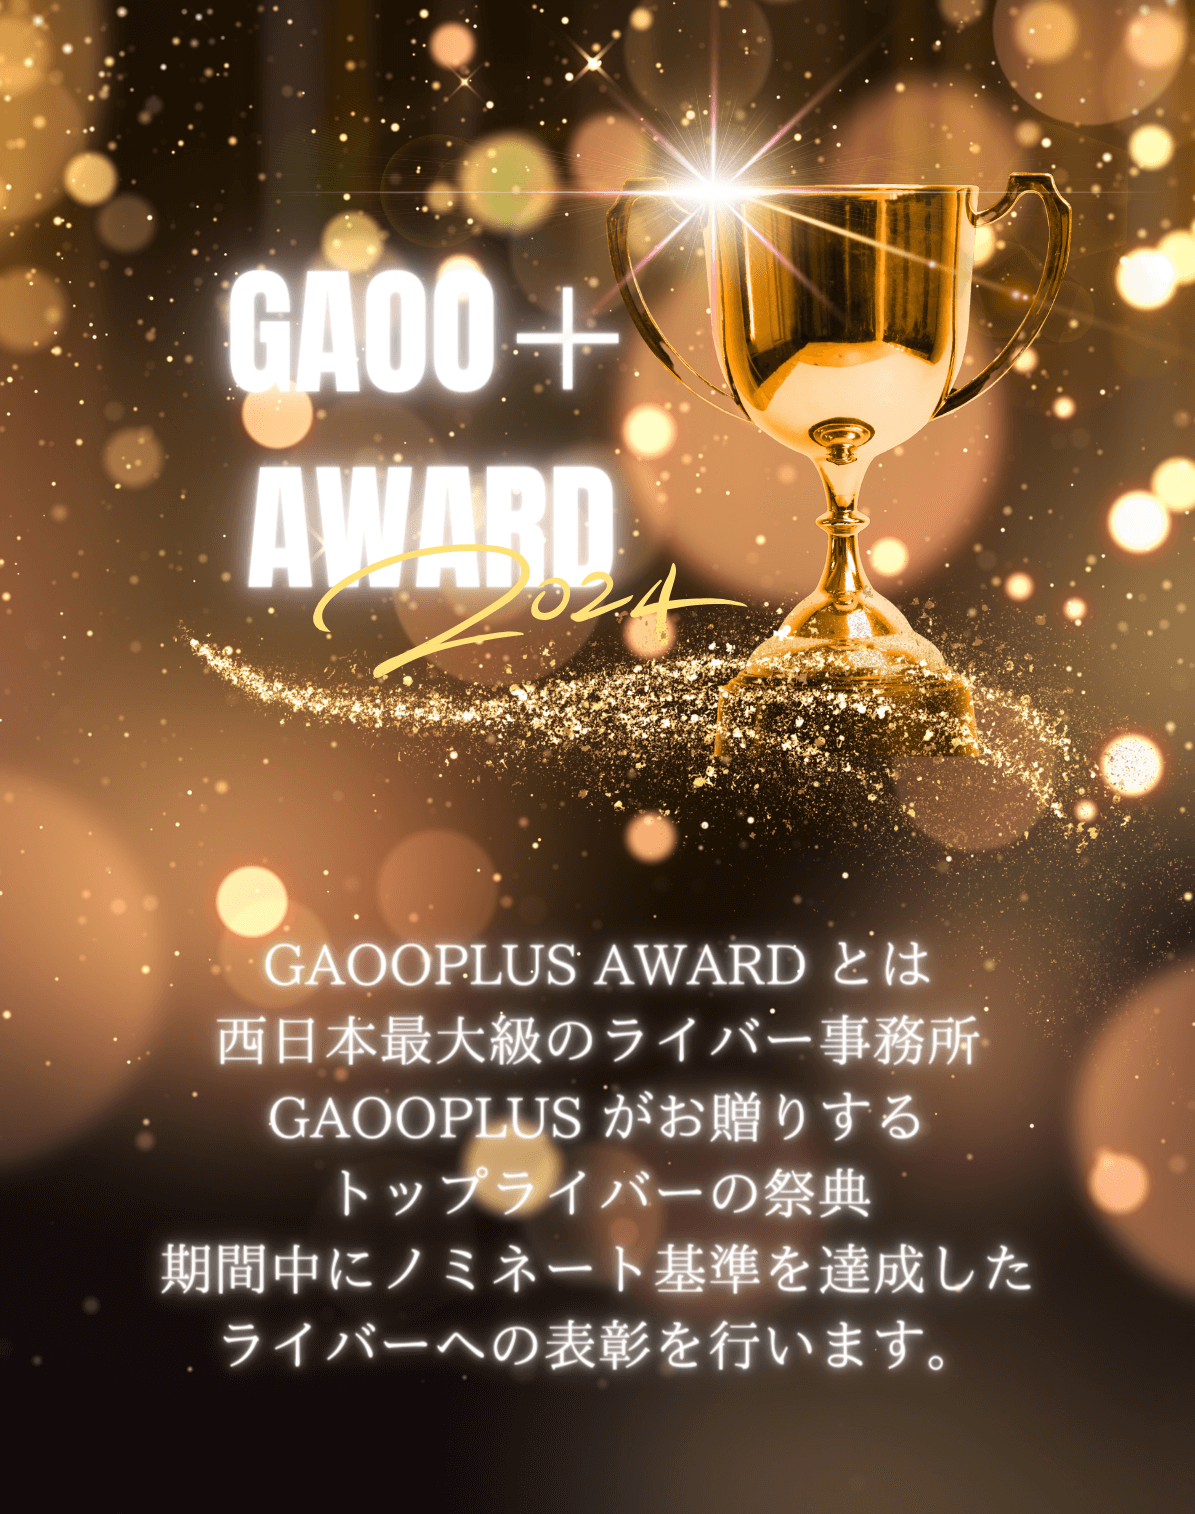 GAOOPLUS AWARD とは
            西日本最大級のライバー事務所GAOOPLUS がお贈りするトップライバーの祭典期間中にノミネート基準を達成したライバーへの表彰を行います。